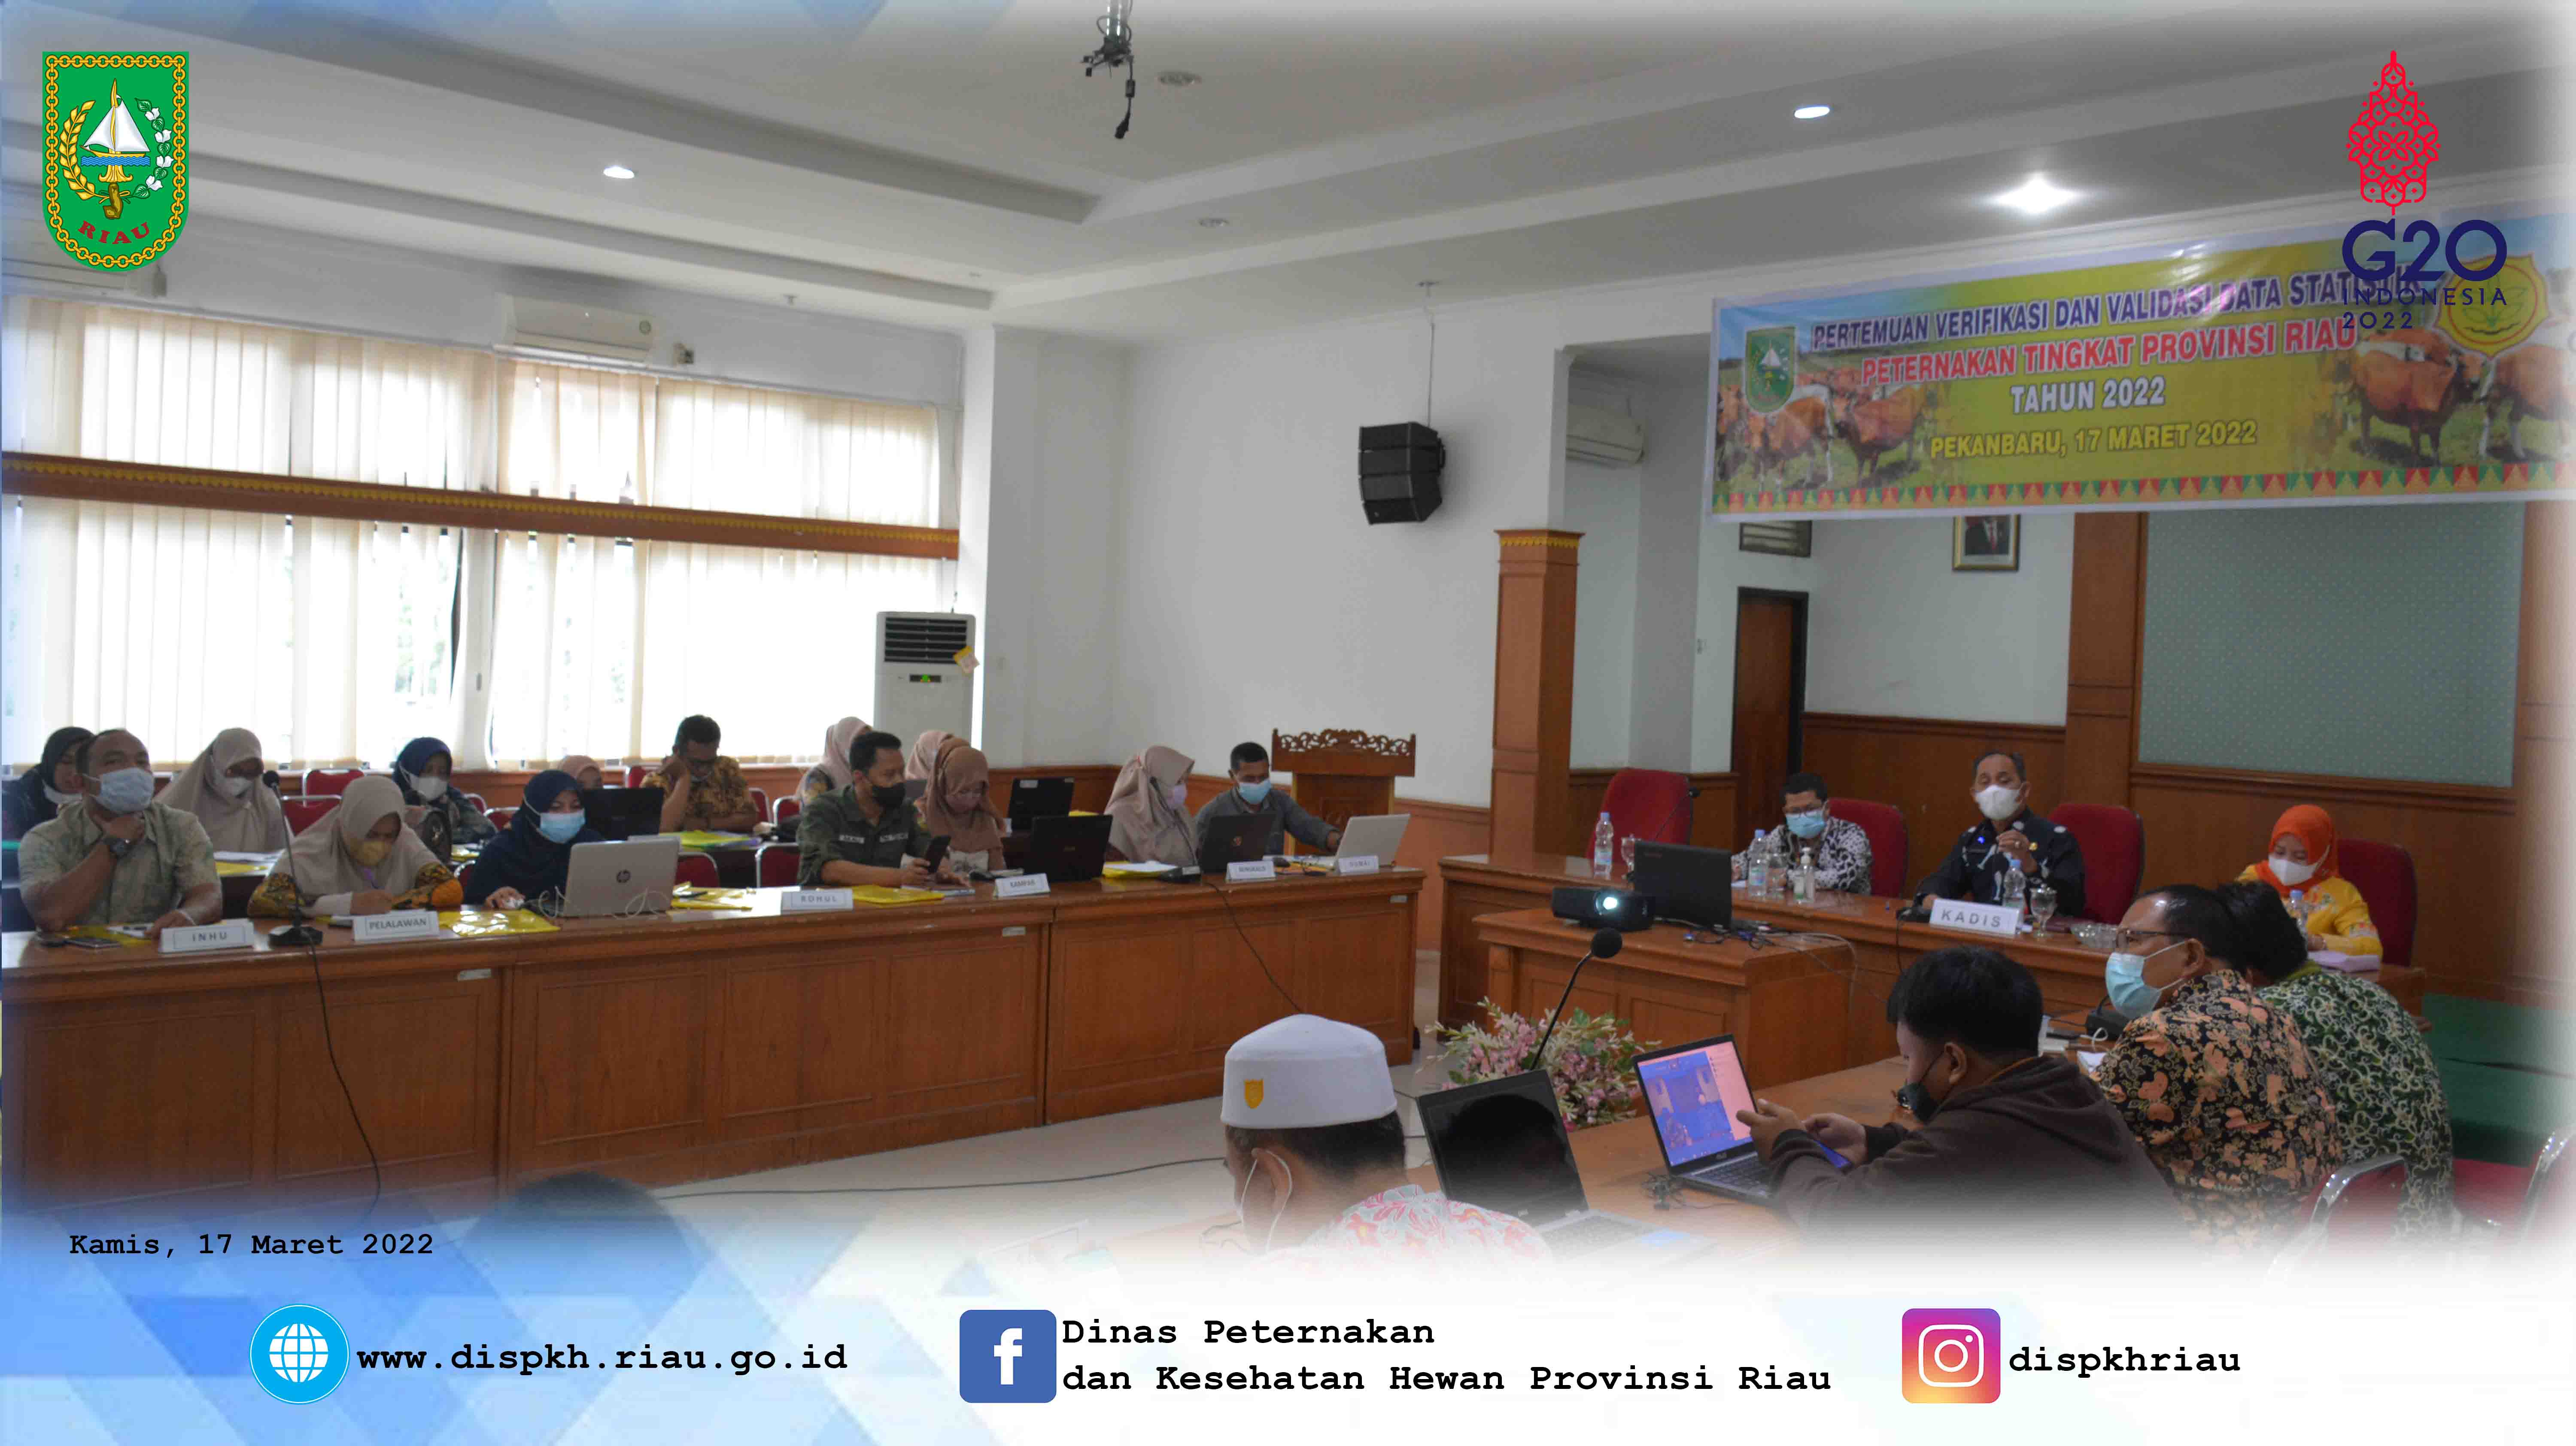 Pertemuan Verifikasi dan Validasi Data Peternakan Tingkat Provinsi Riau TA. 2022